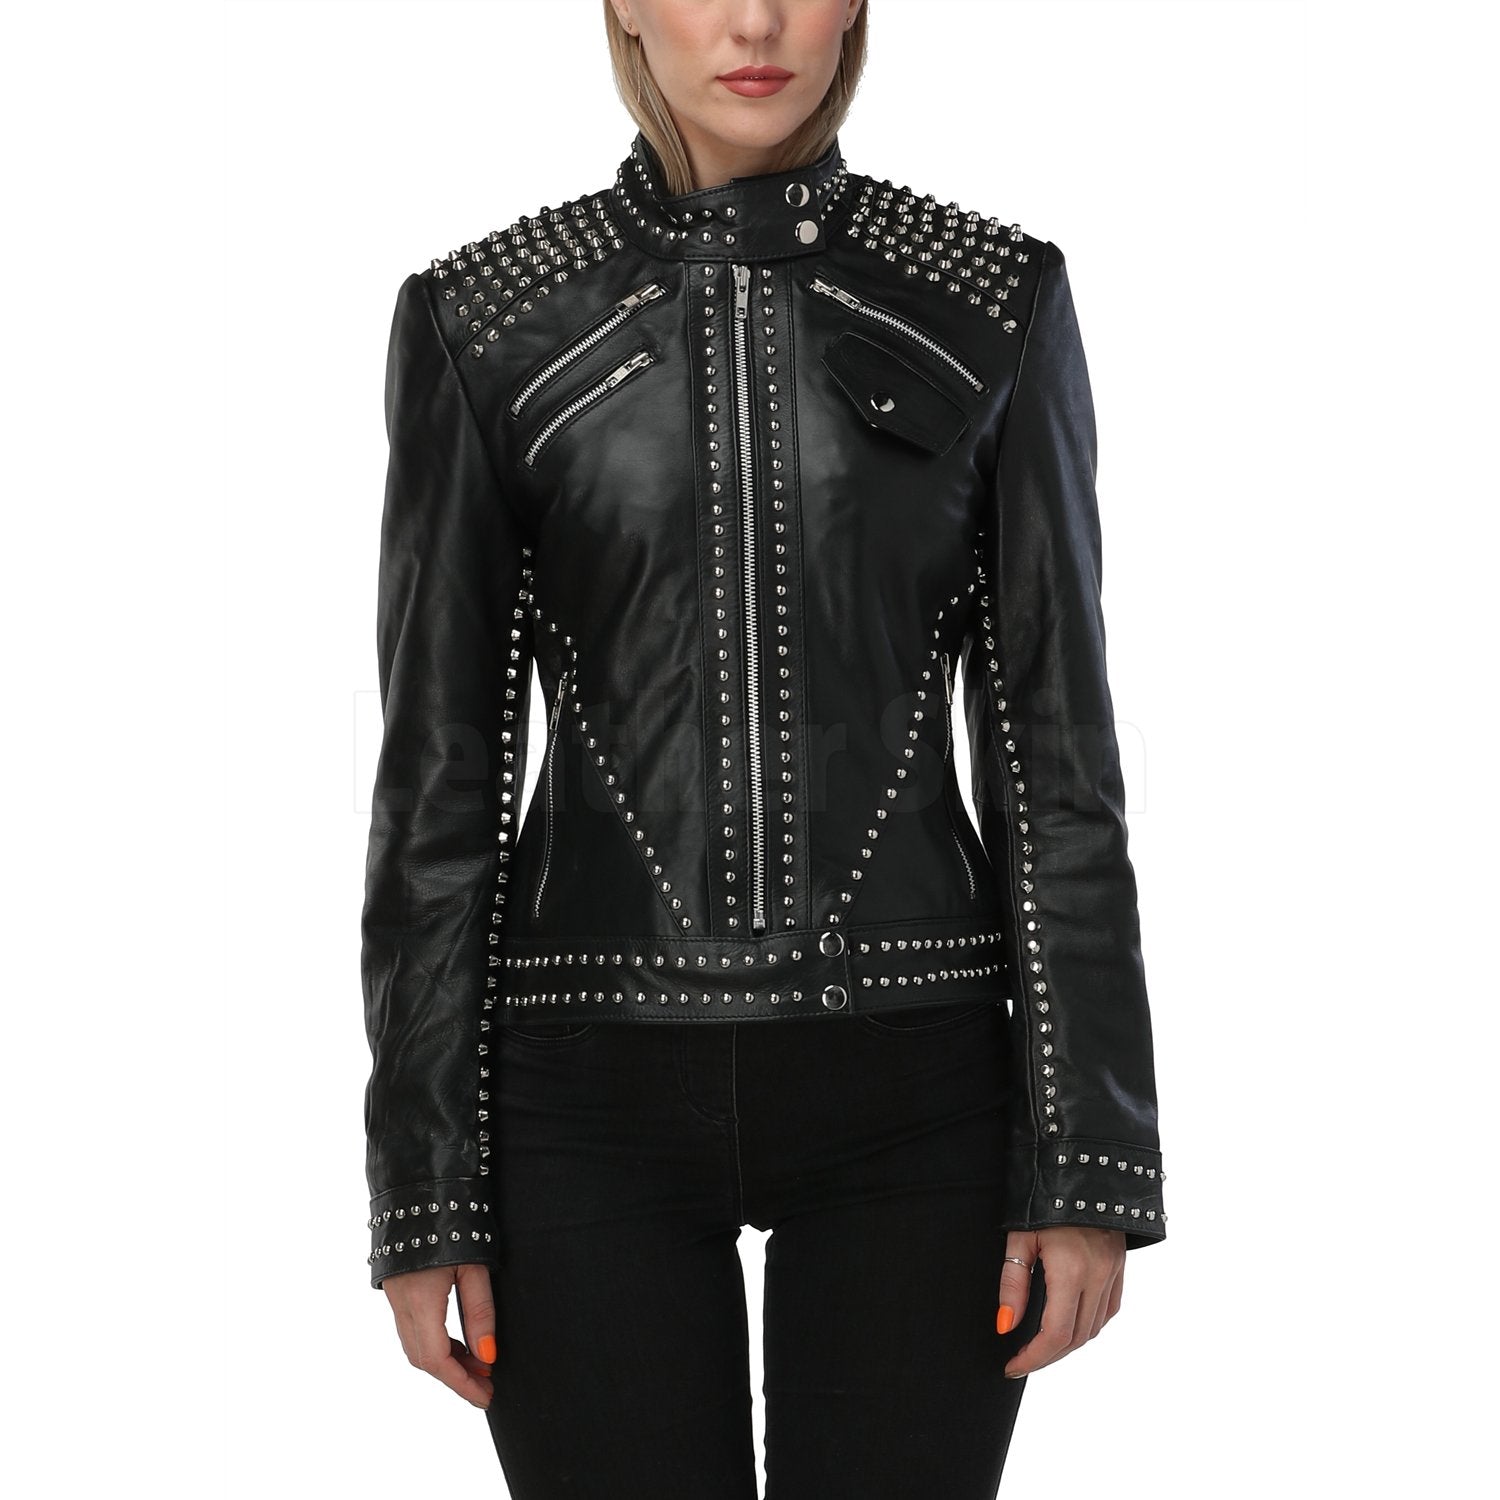 Studded Women's Leather Bomber Jacket